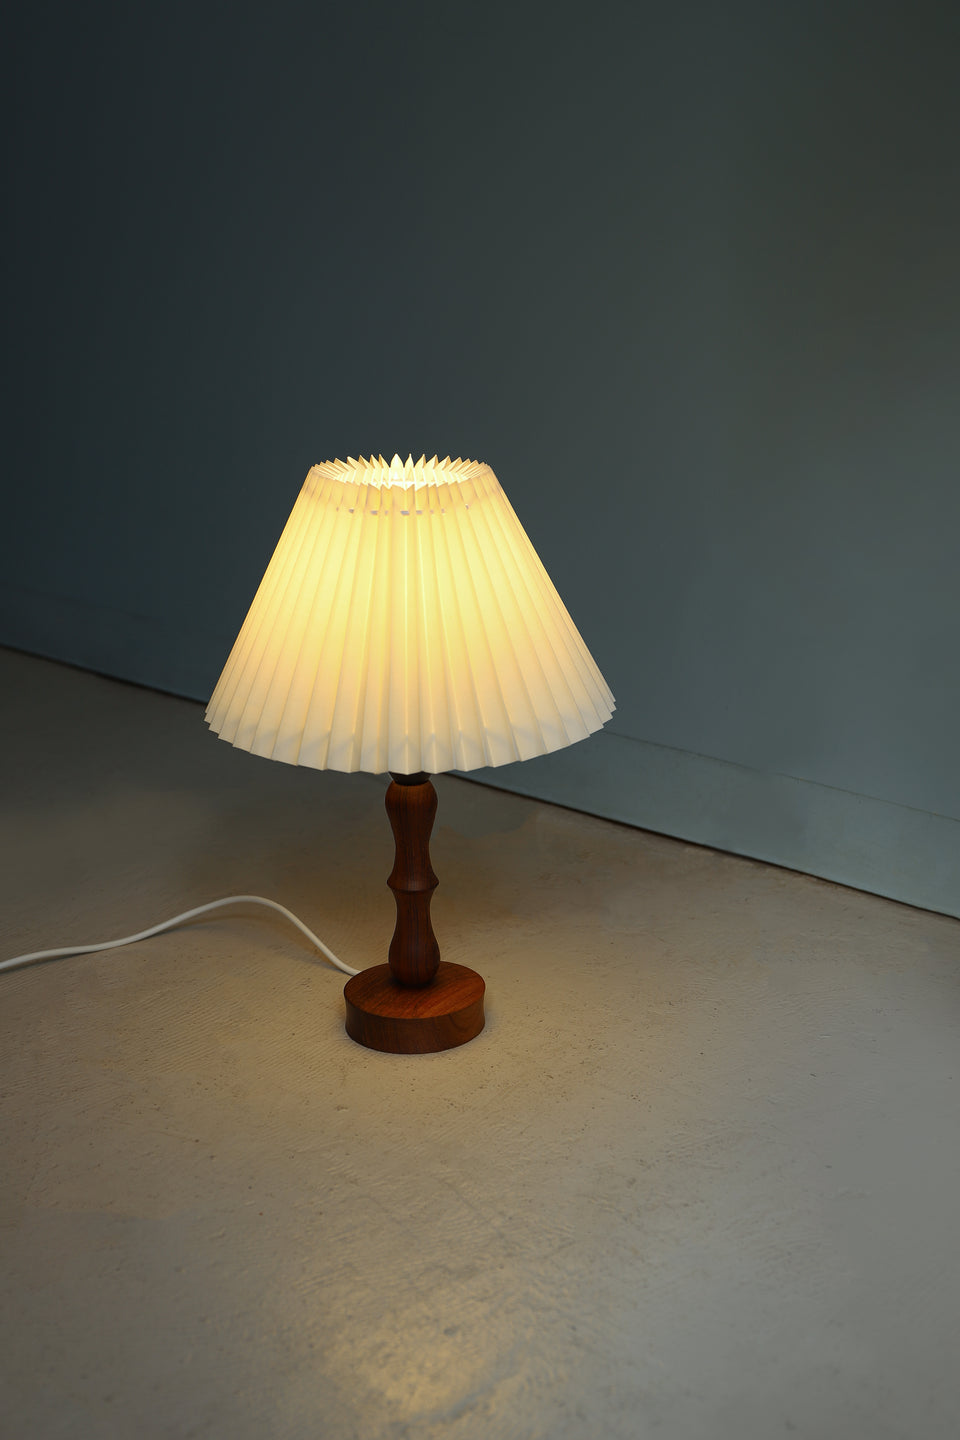 Danish Vintage Rosewood Table Lamp/デンマークヴィンテージ テーブルランプ ローズウッド 間接照明 北欧インテリア